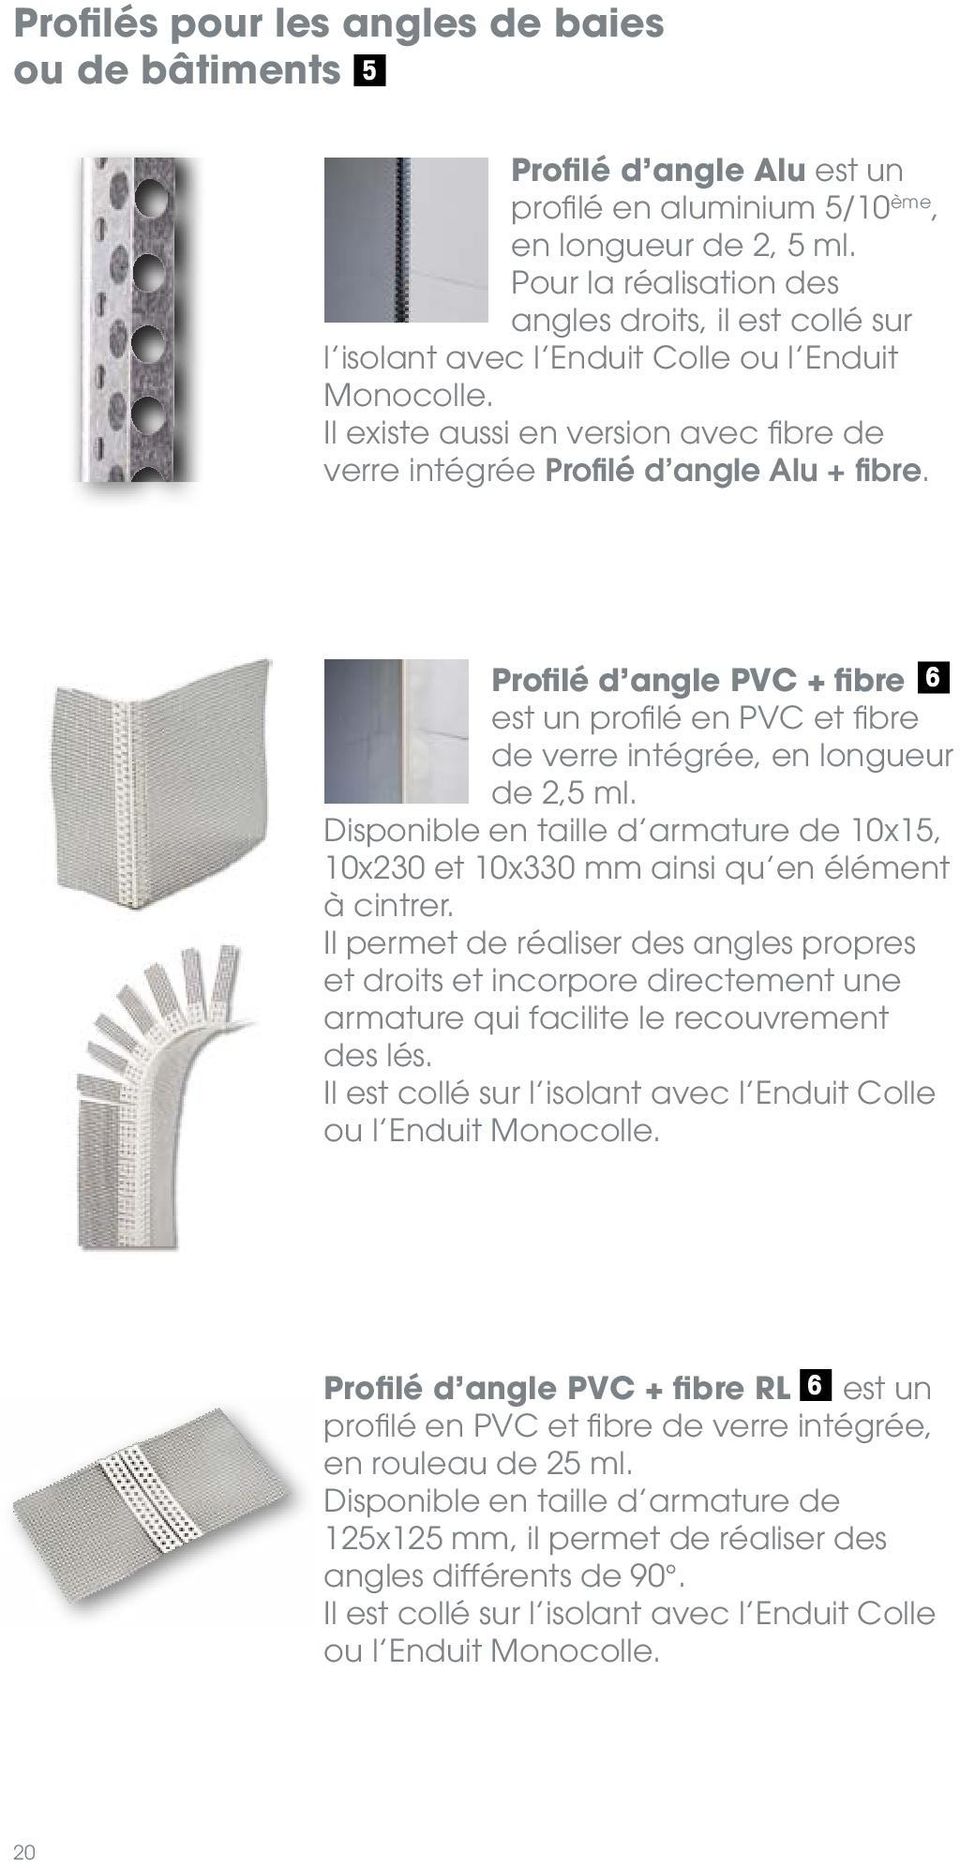 Profilé d angle PVC + fibre 6 est un profilé en PVC et fibre de verre intégrée, en longueur de 2,5 ml. Disponible en taille d armature de 10x15, 10x230 et 10x330 mm ainsi qu en élément à cintrer.